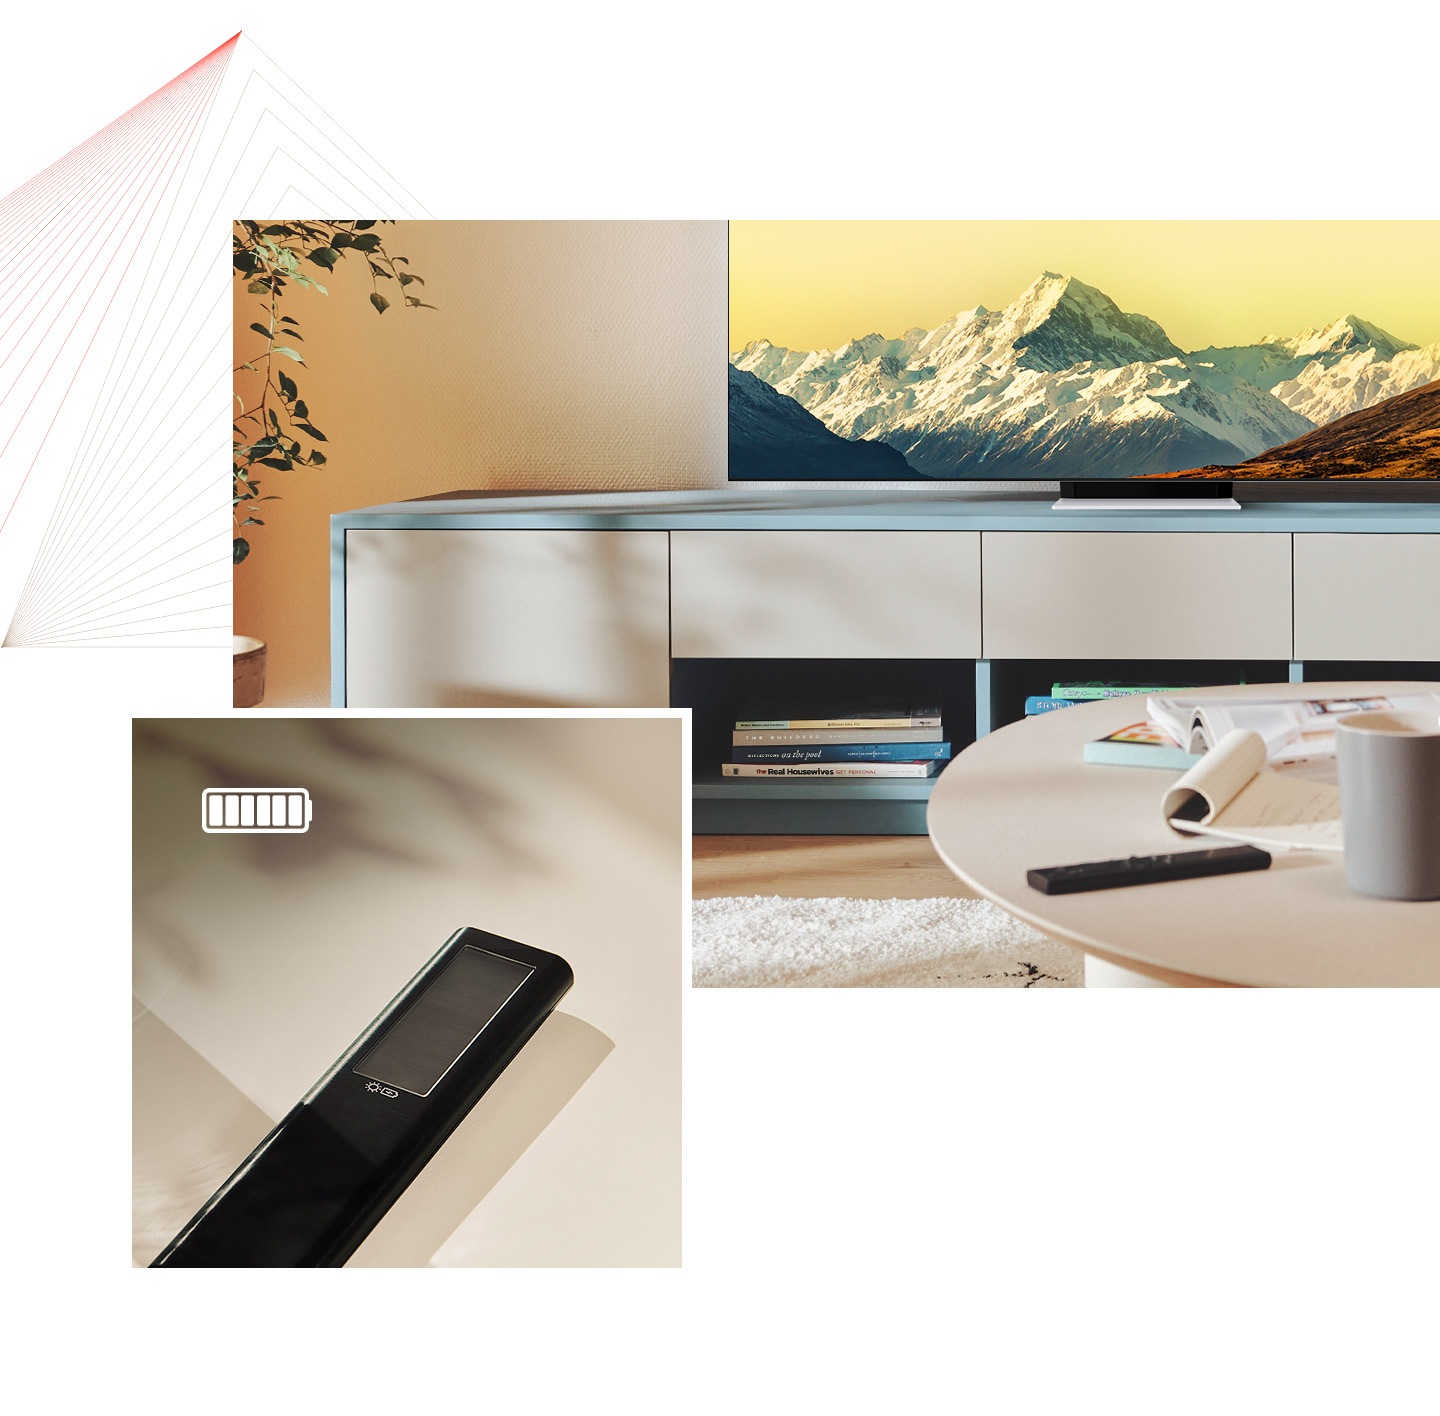 SolarCell pults atrodas uz galda gaišā telpā, un displejā ir redzams arī Neo QLED. Tāpat ir redzams SolarCell pults tuvplāns ar pilnībā uzlādētu akumulatora ikonu.